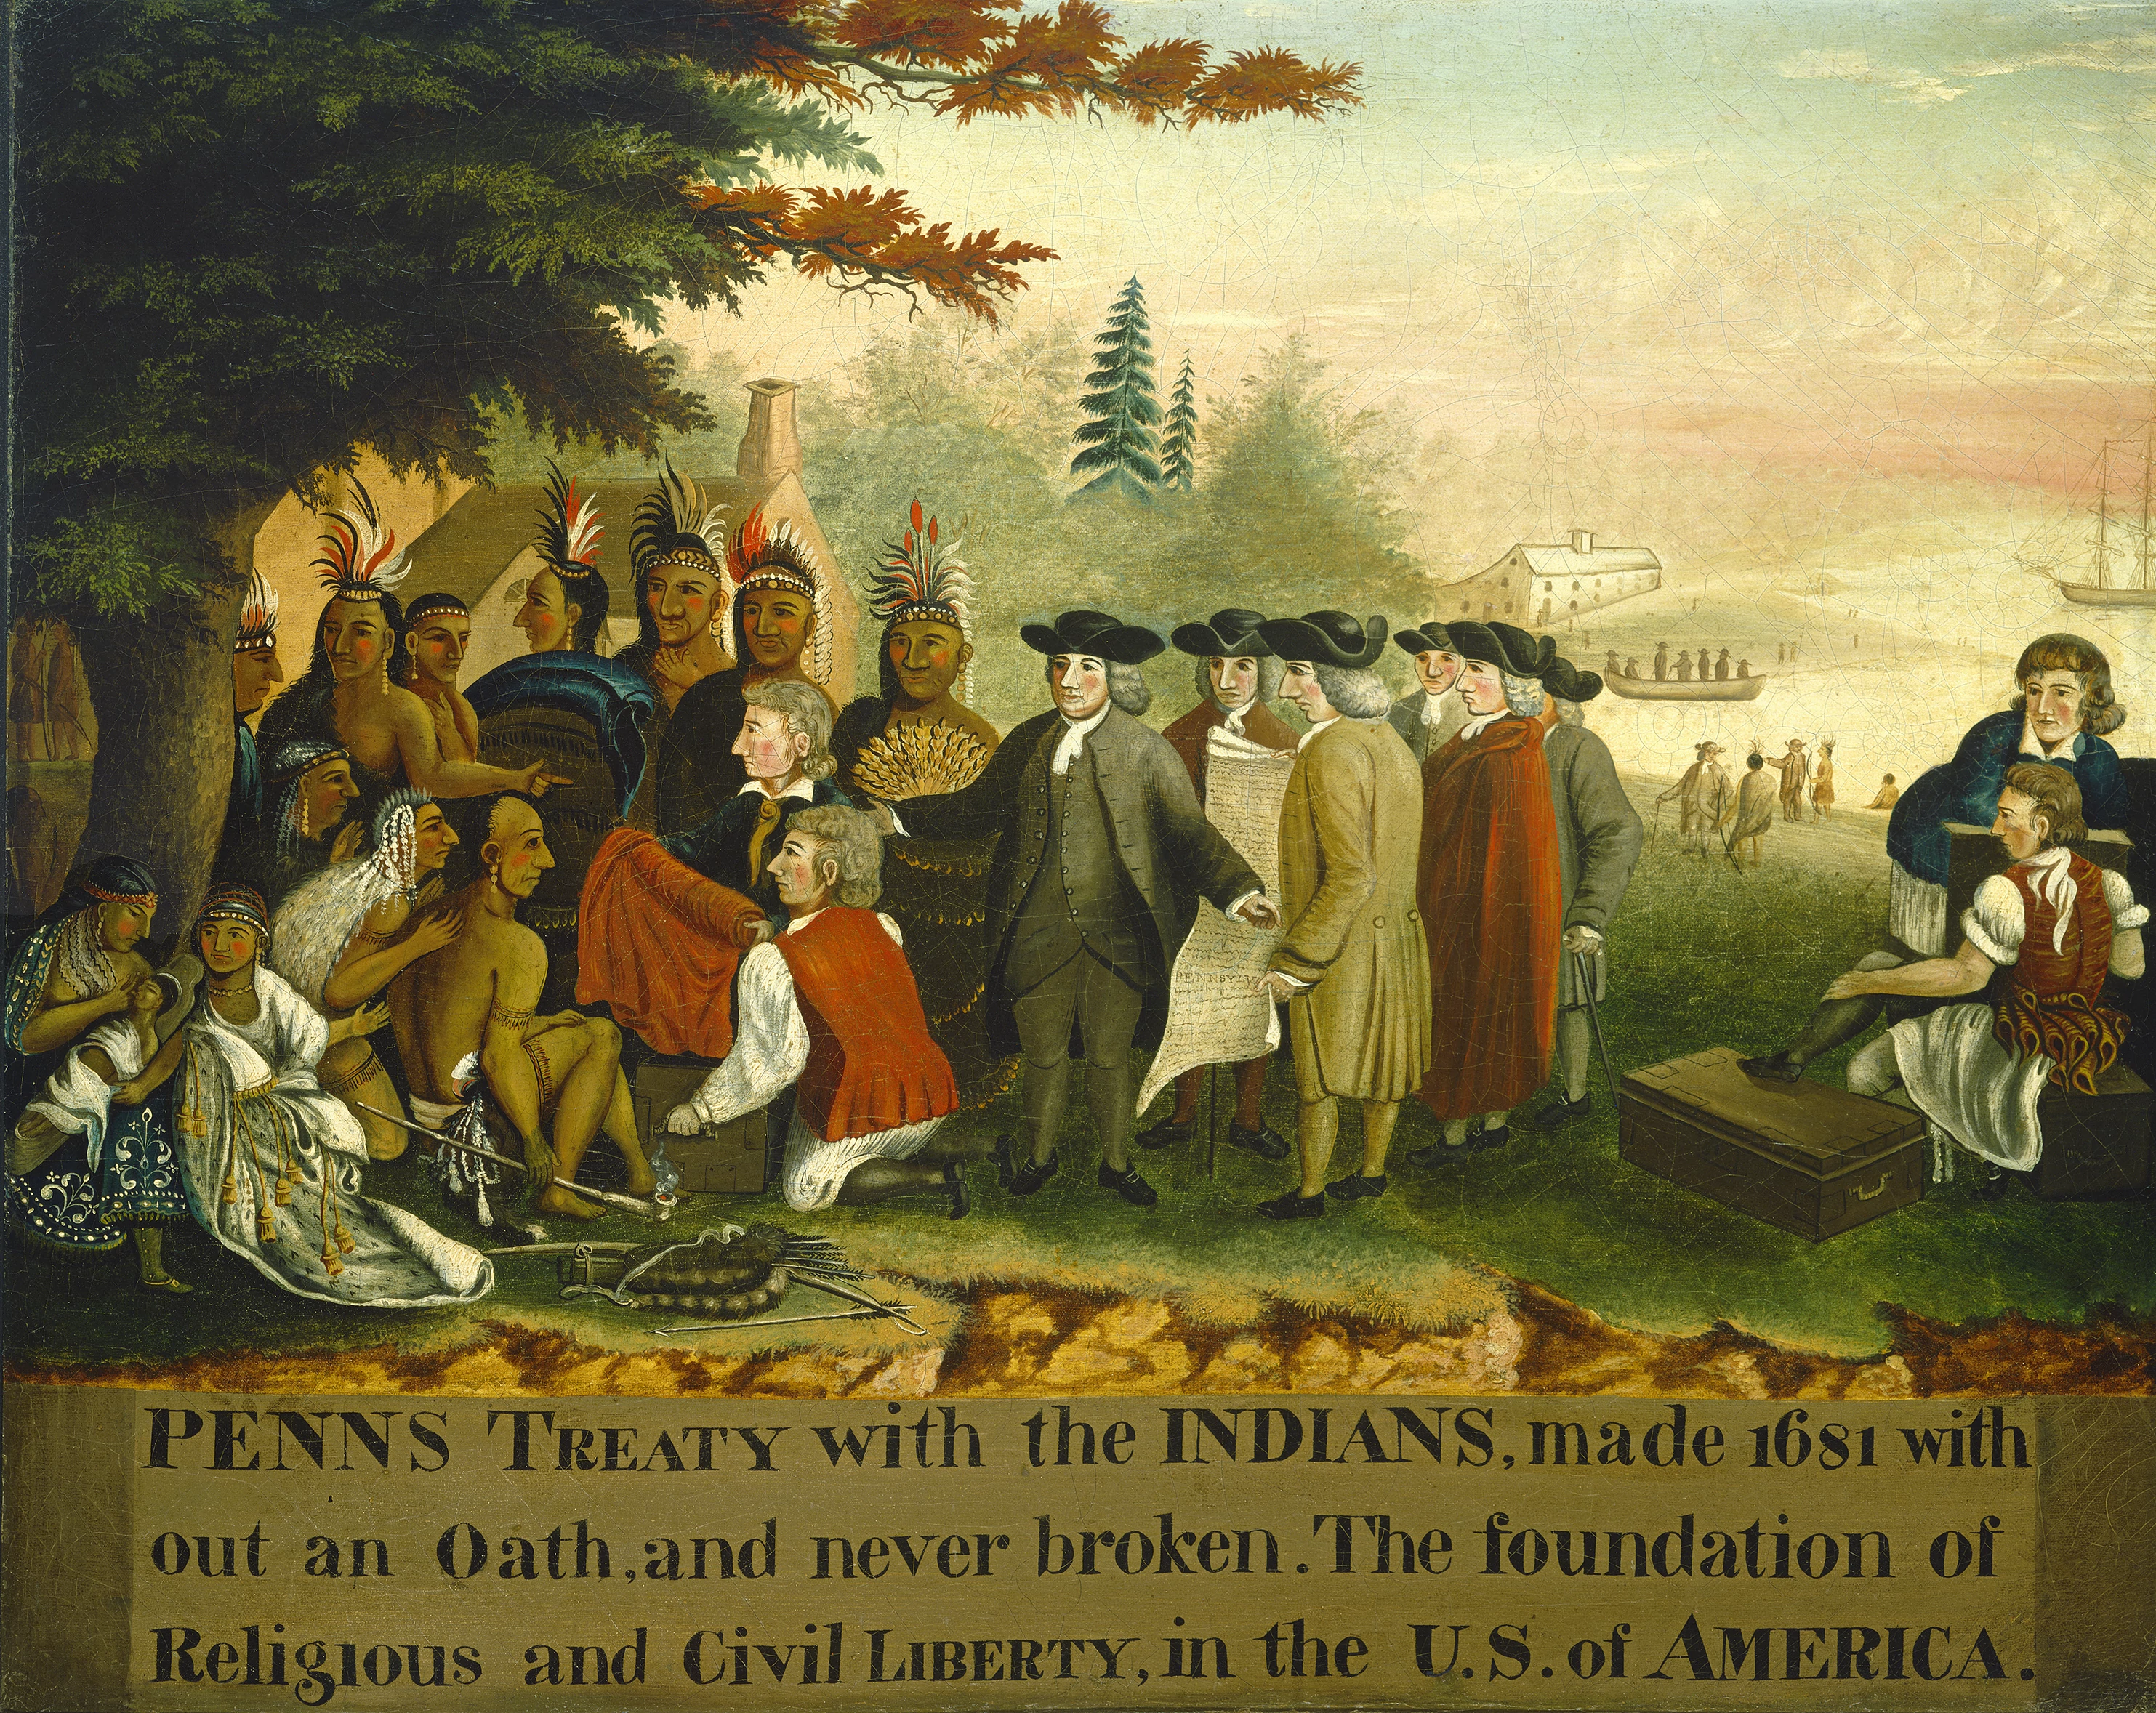 Penn's Treaty with the Indians, Edward Hicks